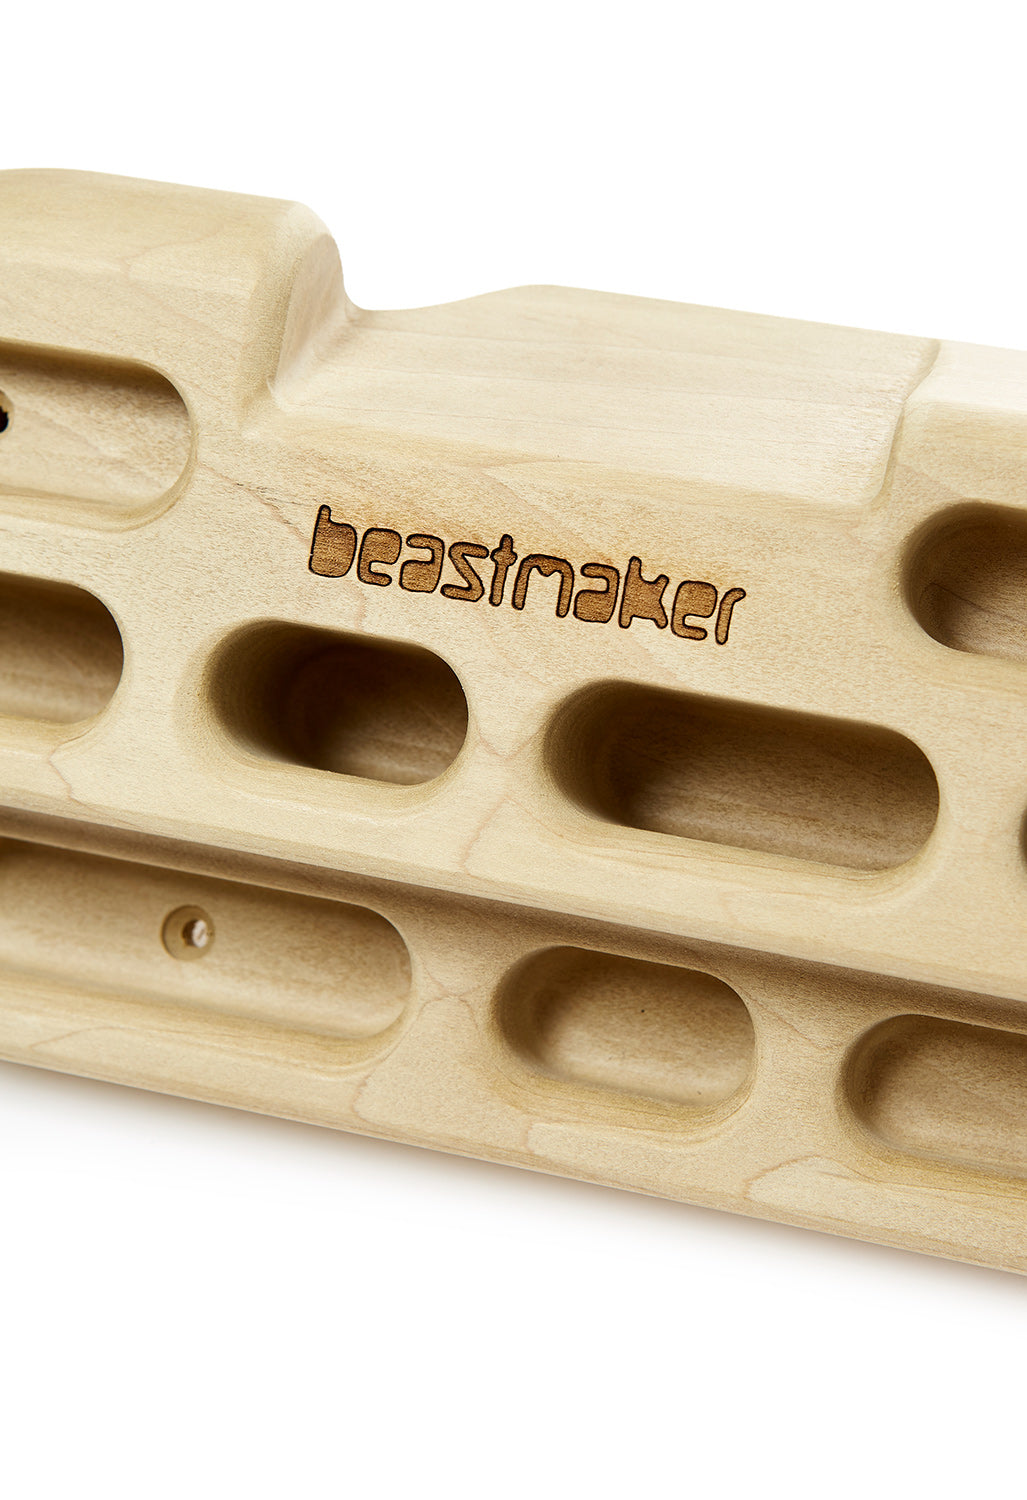 Beastmaker 1000 Series Fingerboard